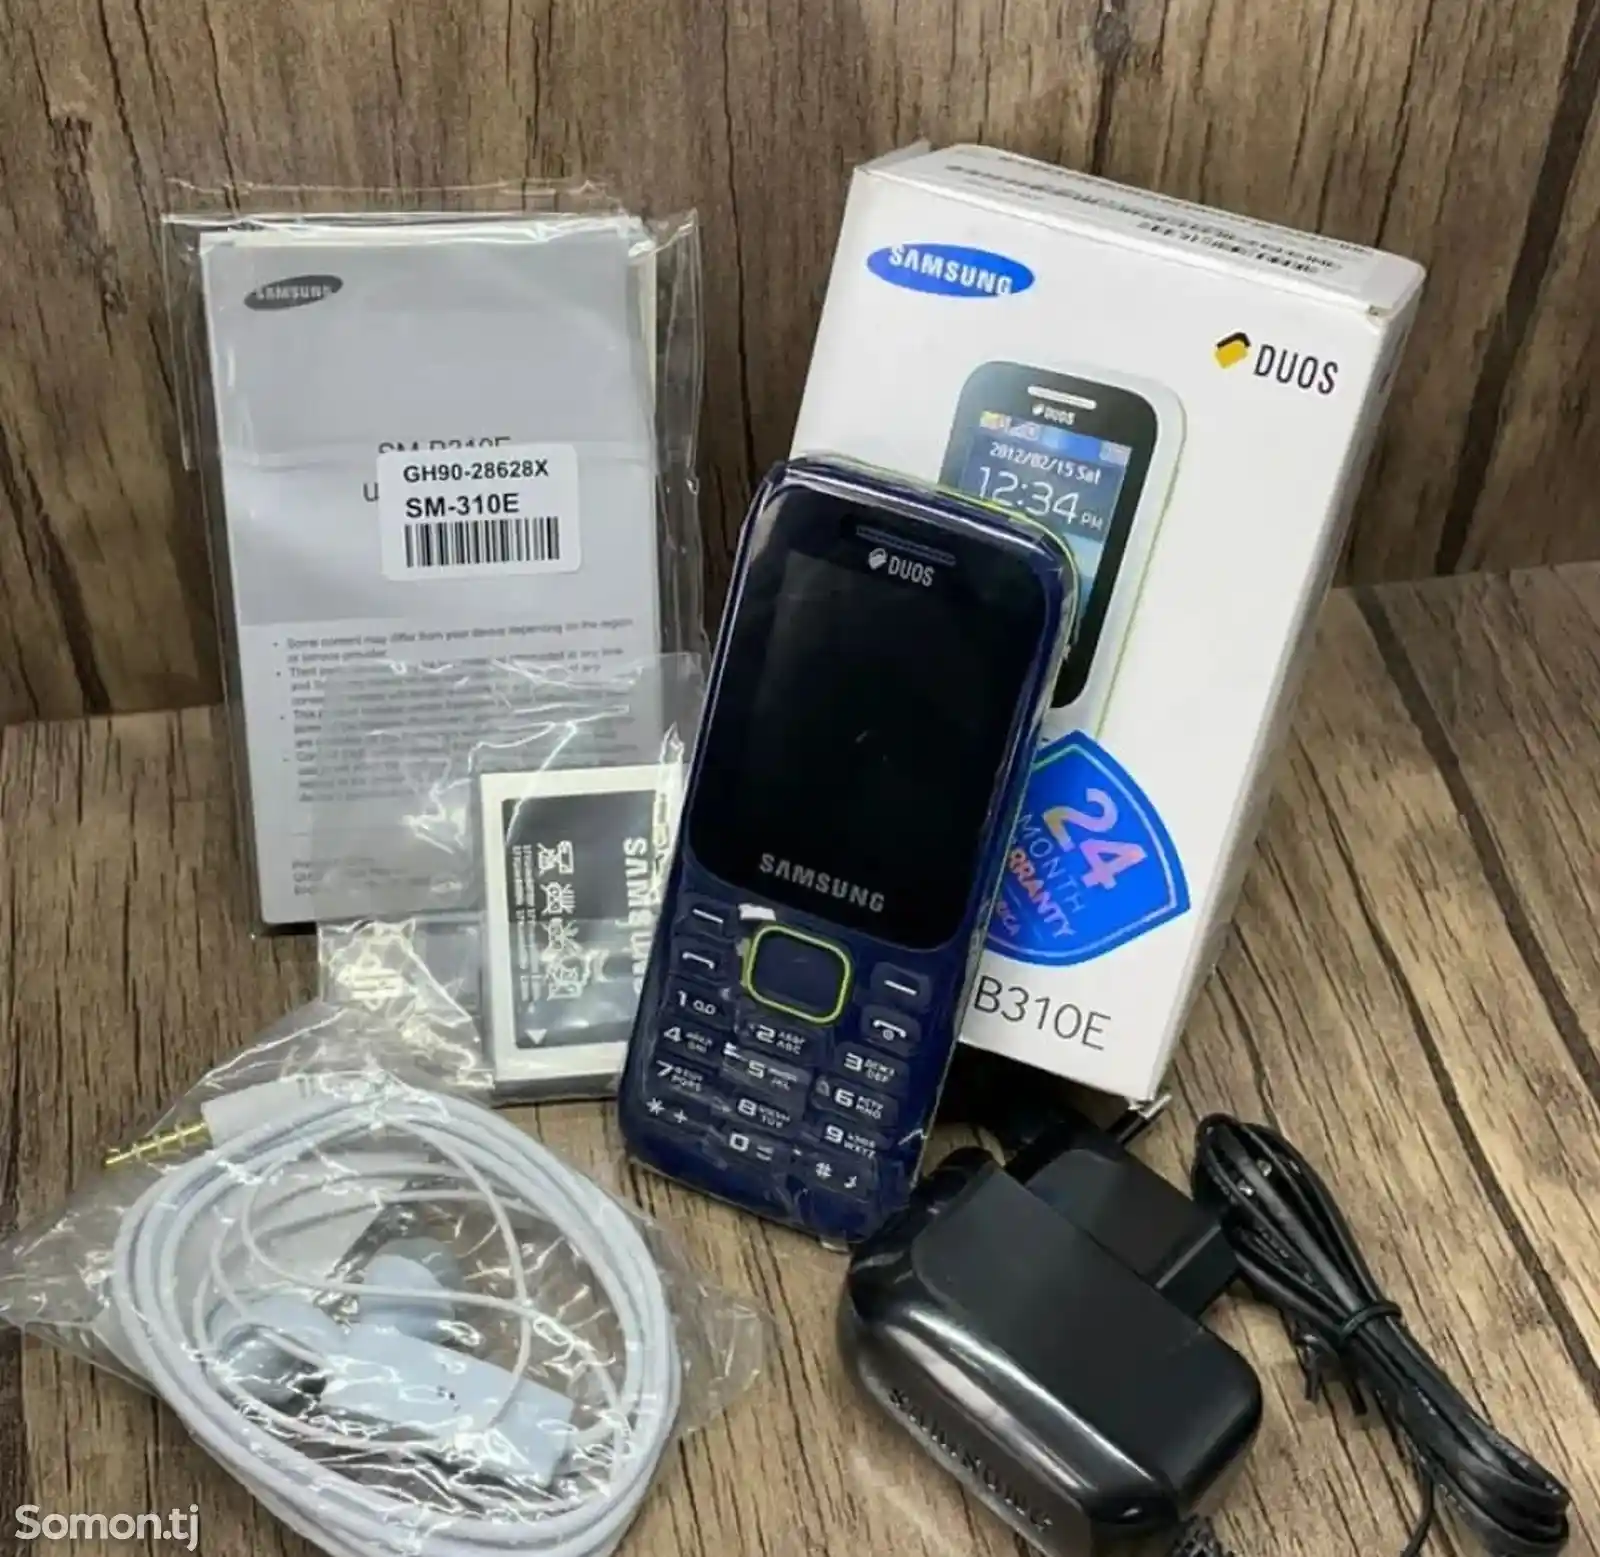 Samsung B310E-3